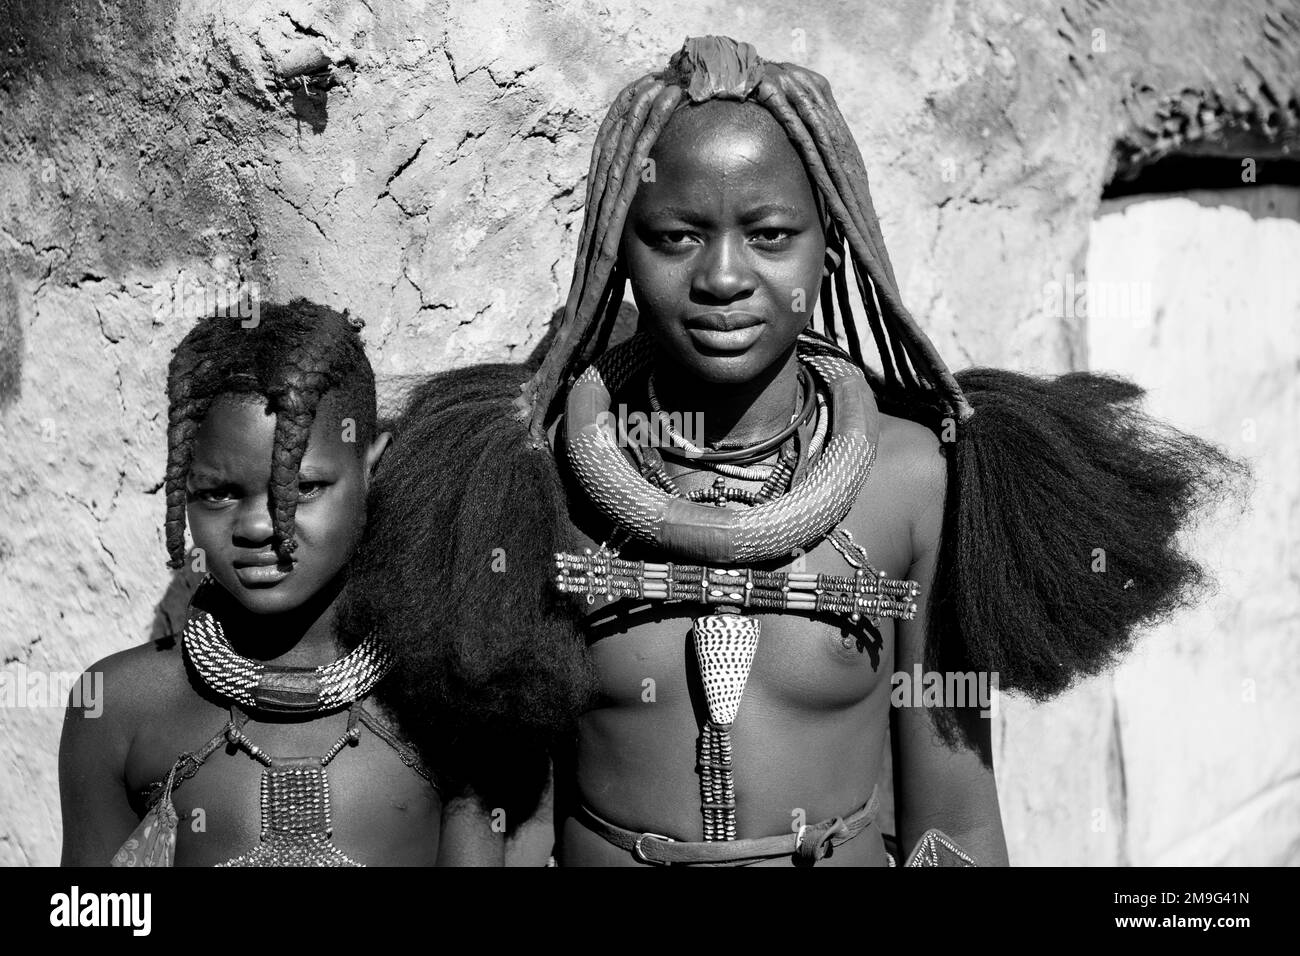 Portrait de la femme et du garçon Himba, Damaraland, Namibie, Afrique Banque D'Images